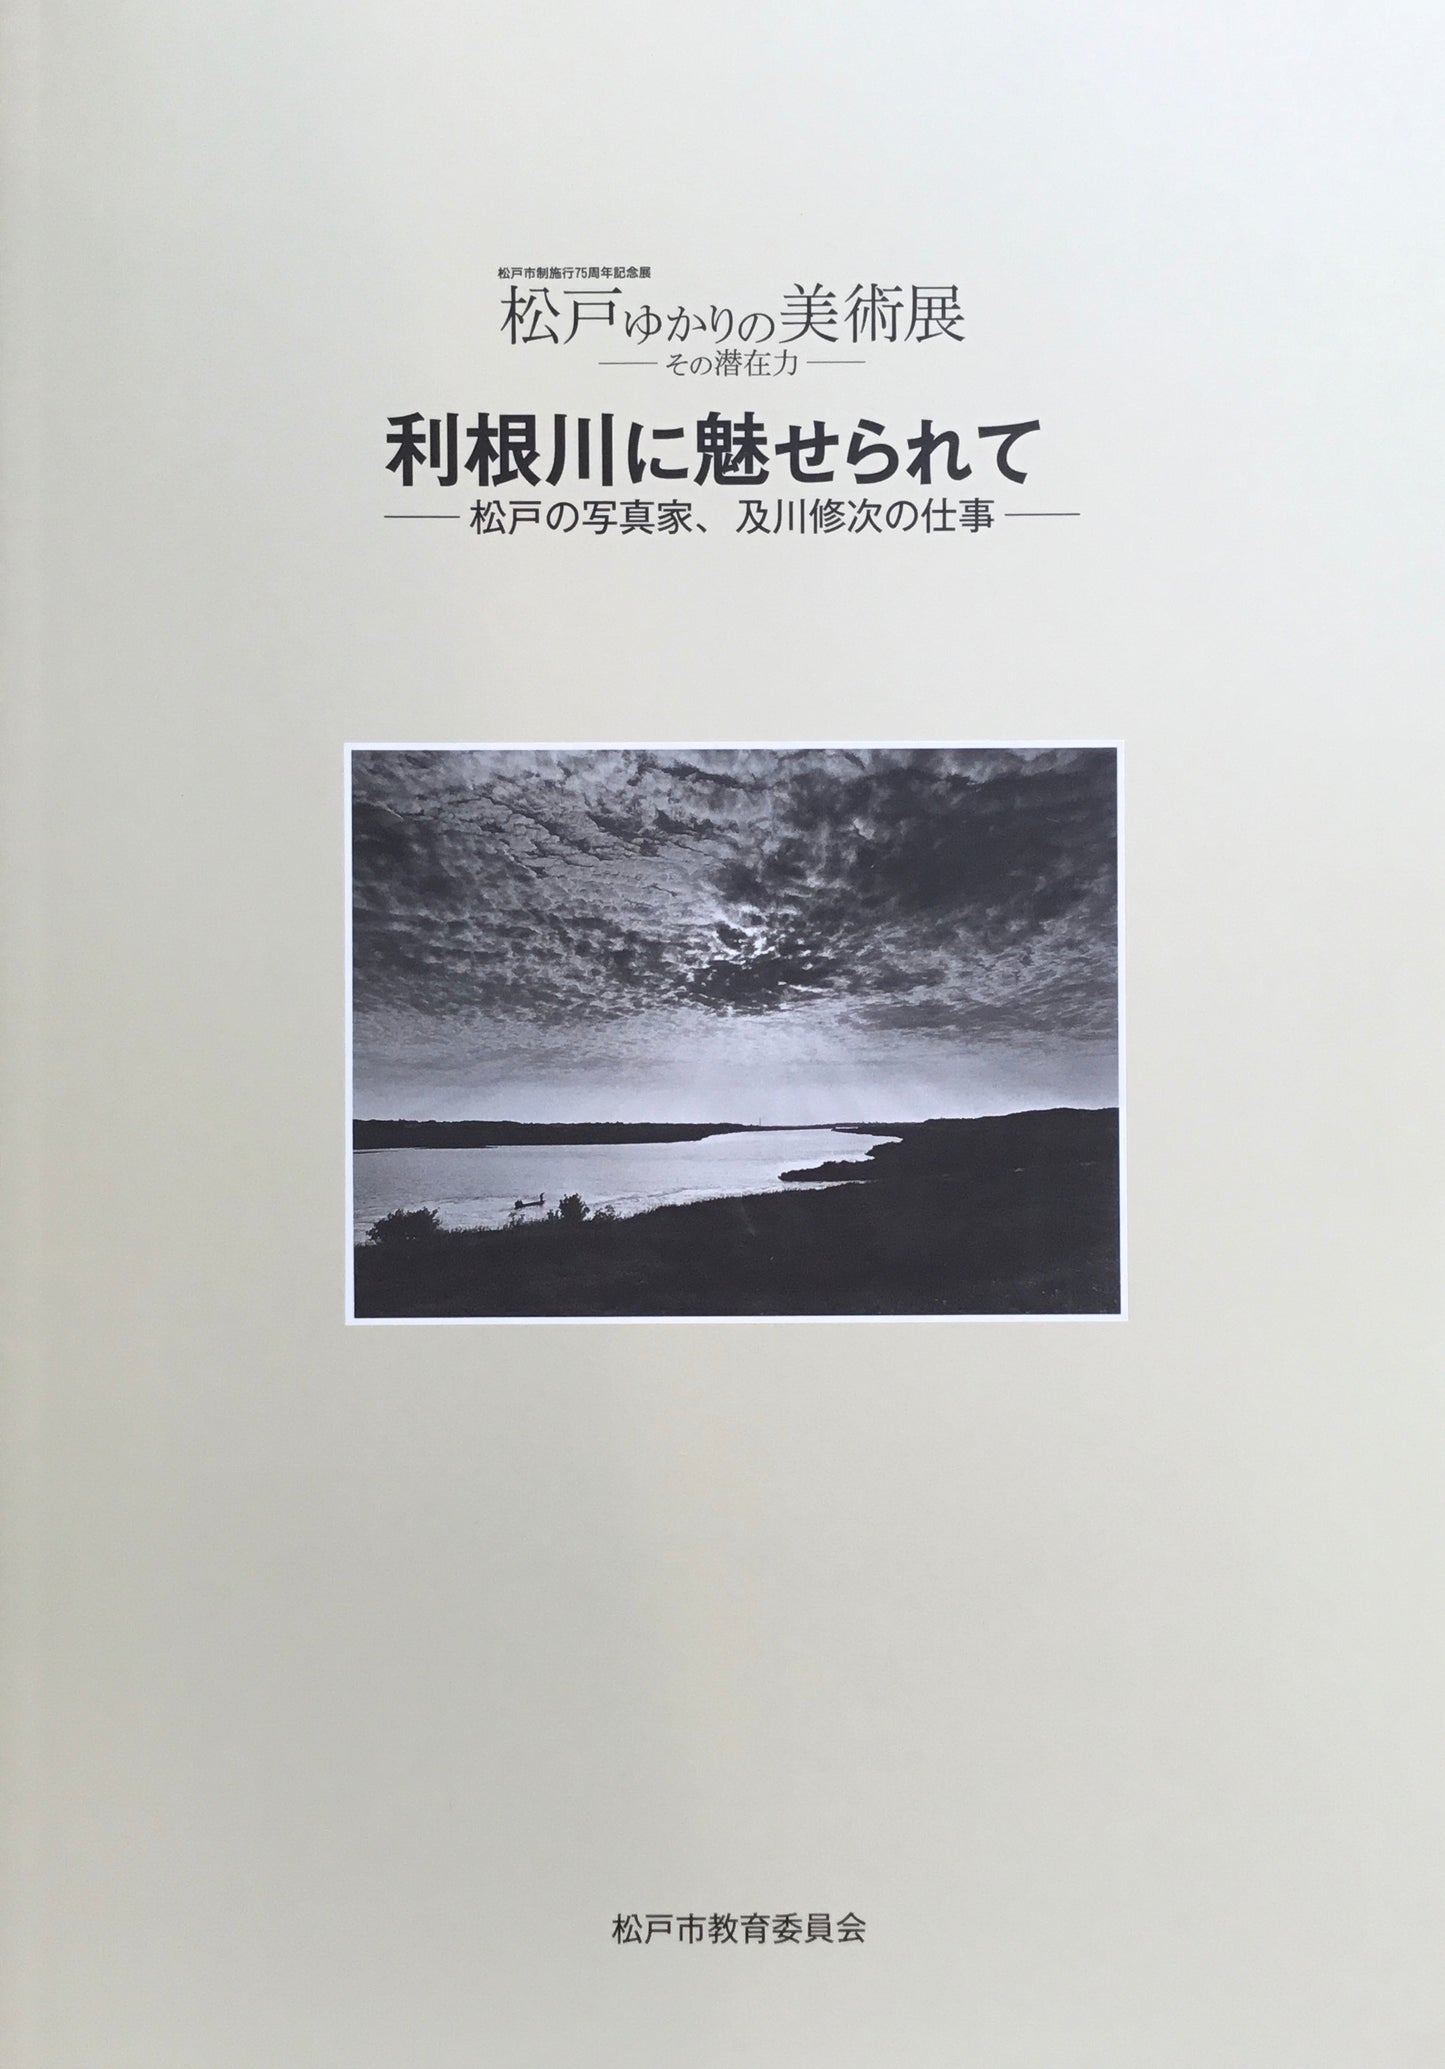 利根川に魅せられて―松戸の写真家、及川修次の仕事―